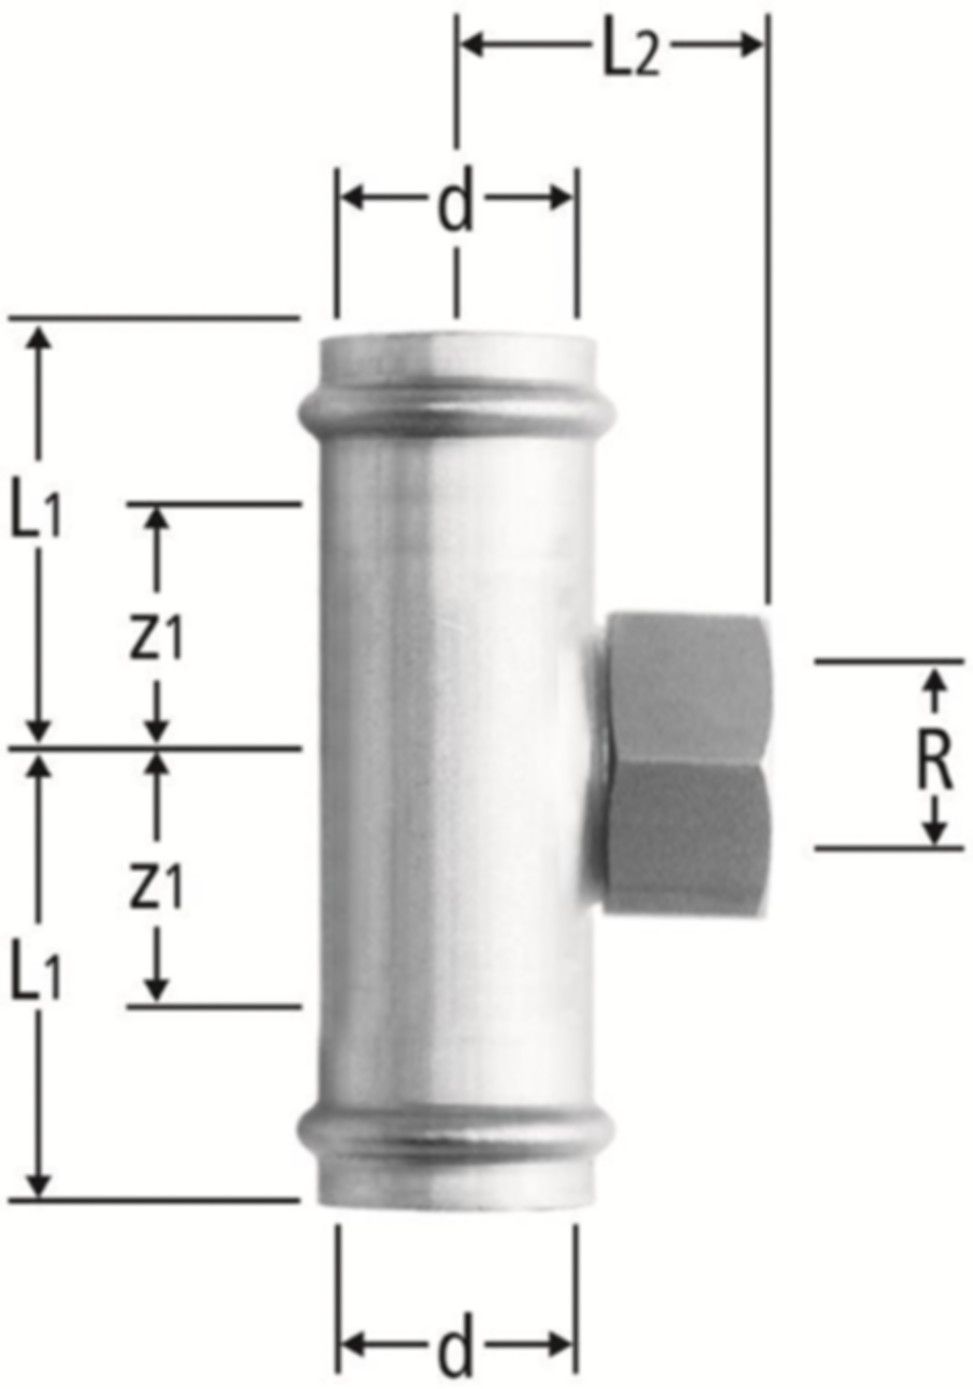 T-Stück m/IG 18 x 1/2" x 18 mm 80019.23 mit Schiebemuffe - Nussbaum-Optipress-Inox-Fittings